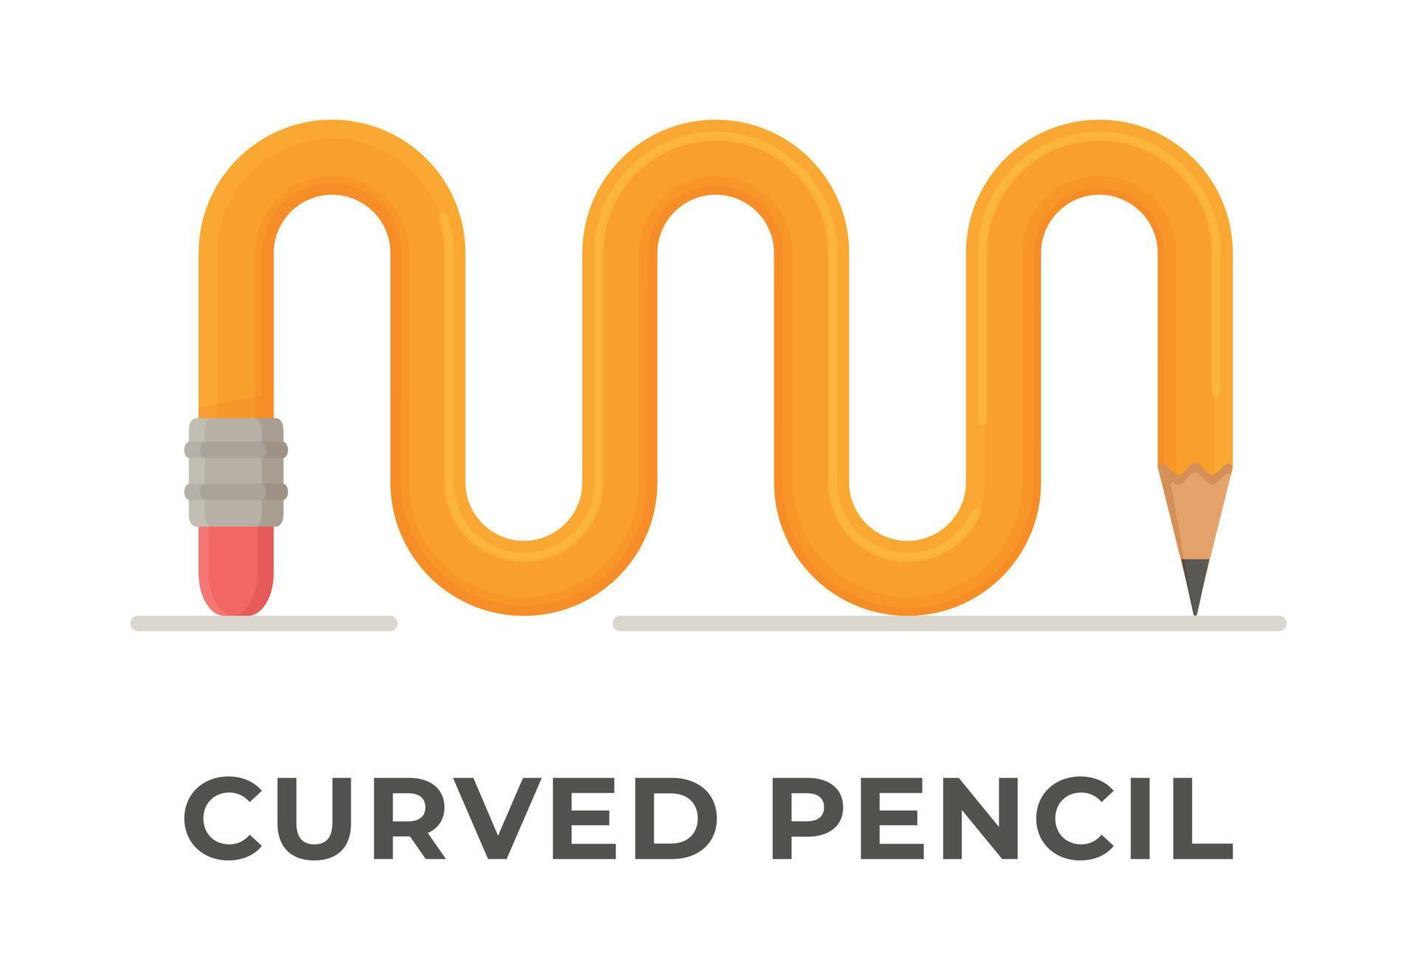 illustration vectorielle d'un crayon uni torsadé isolé. achat de papeterie pour l'école ou l'université. vecteur